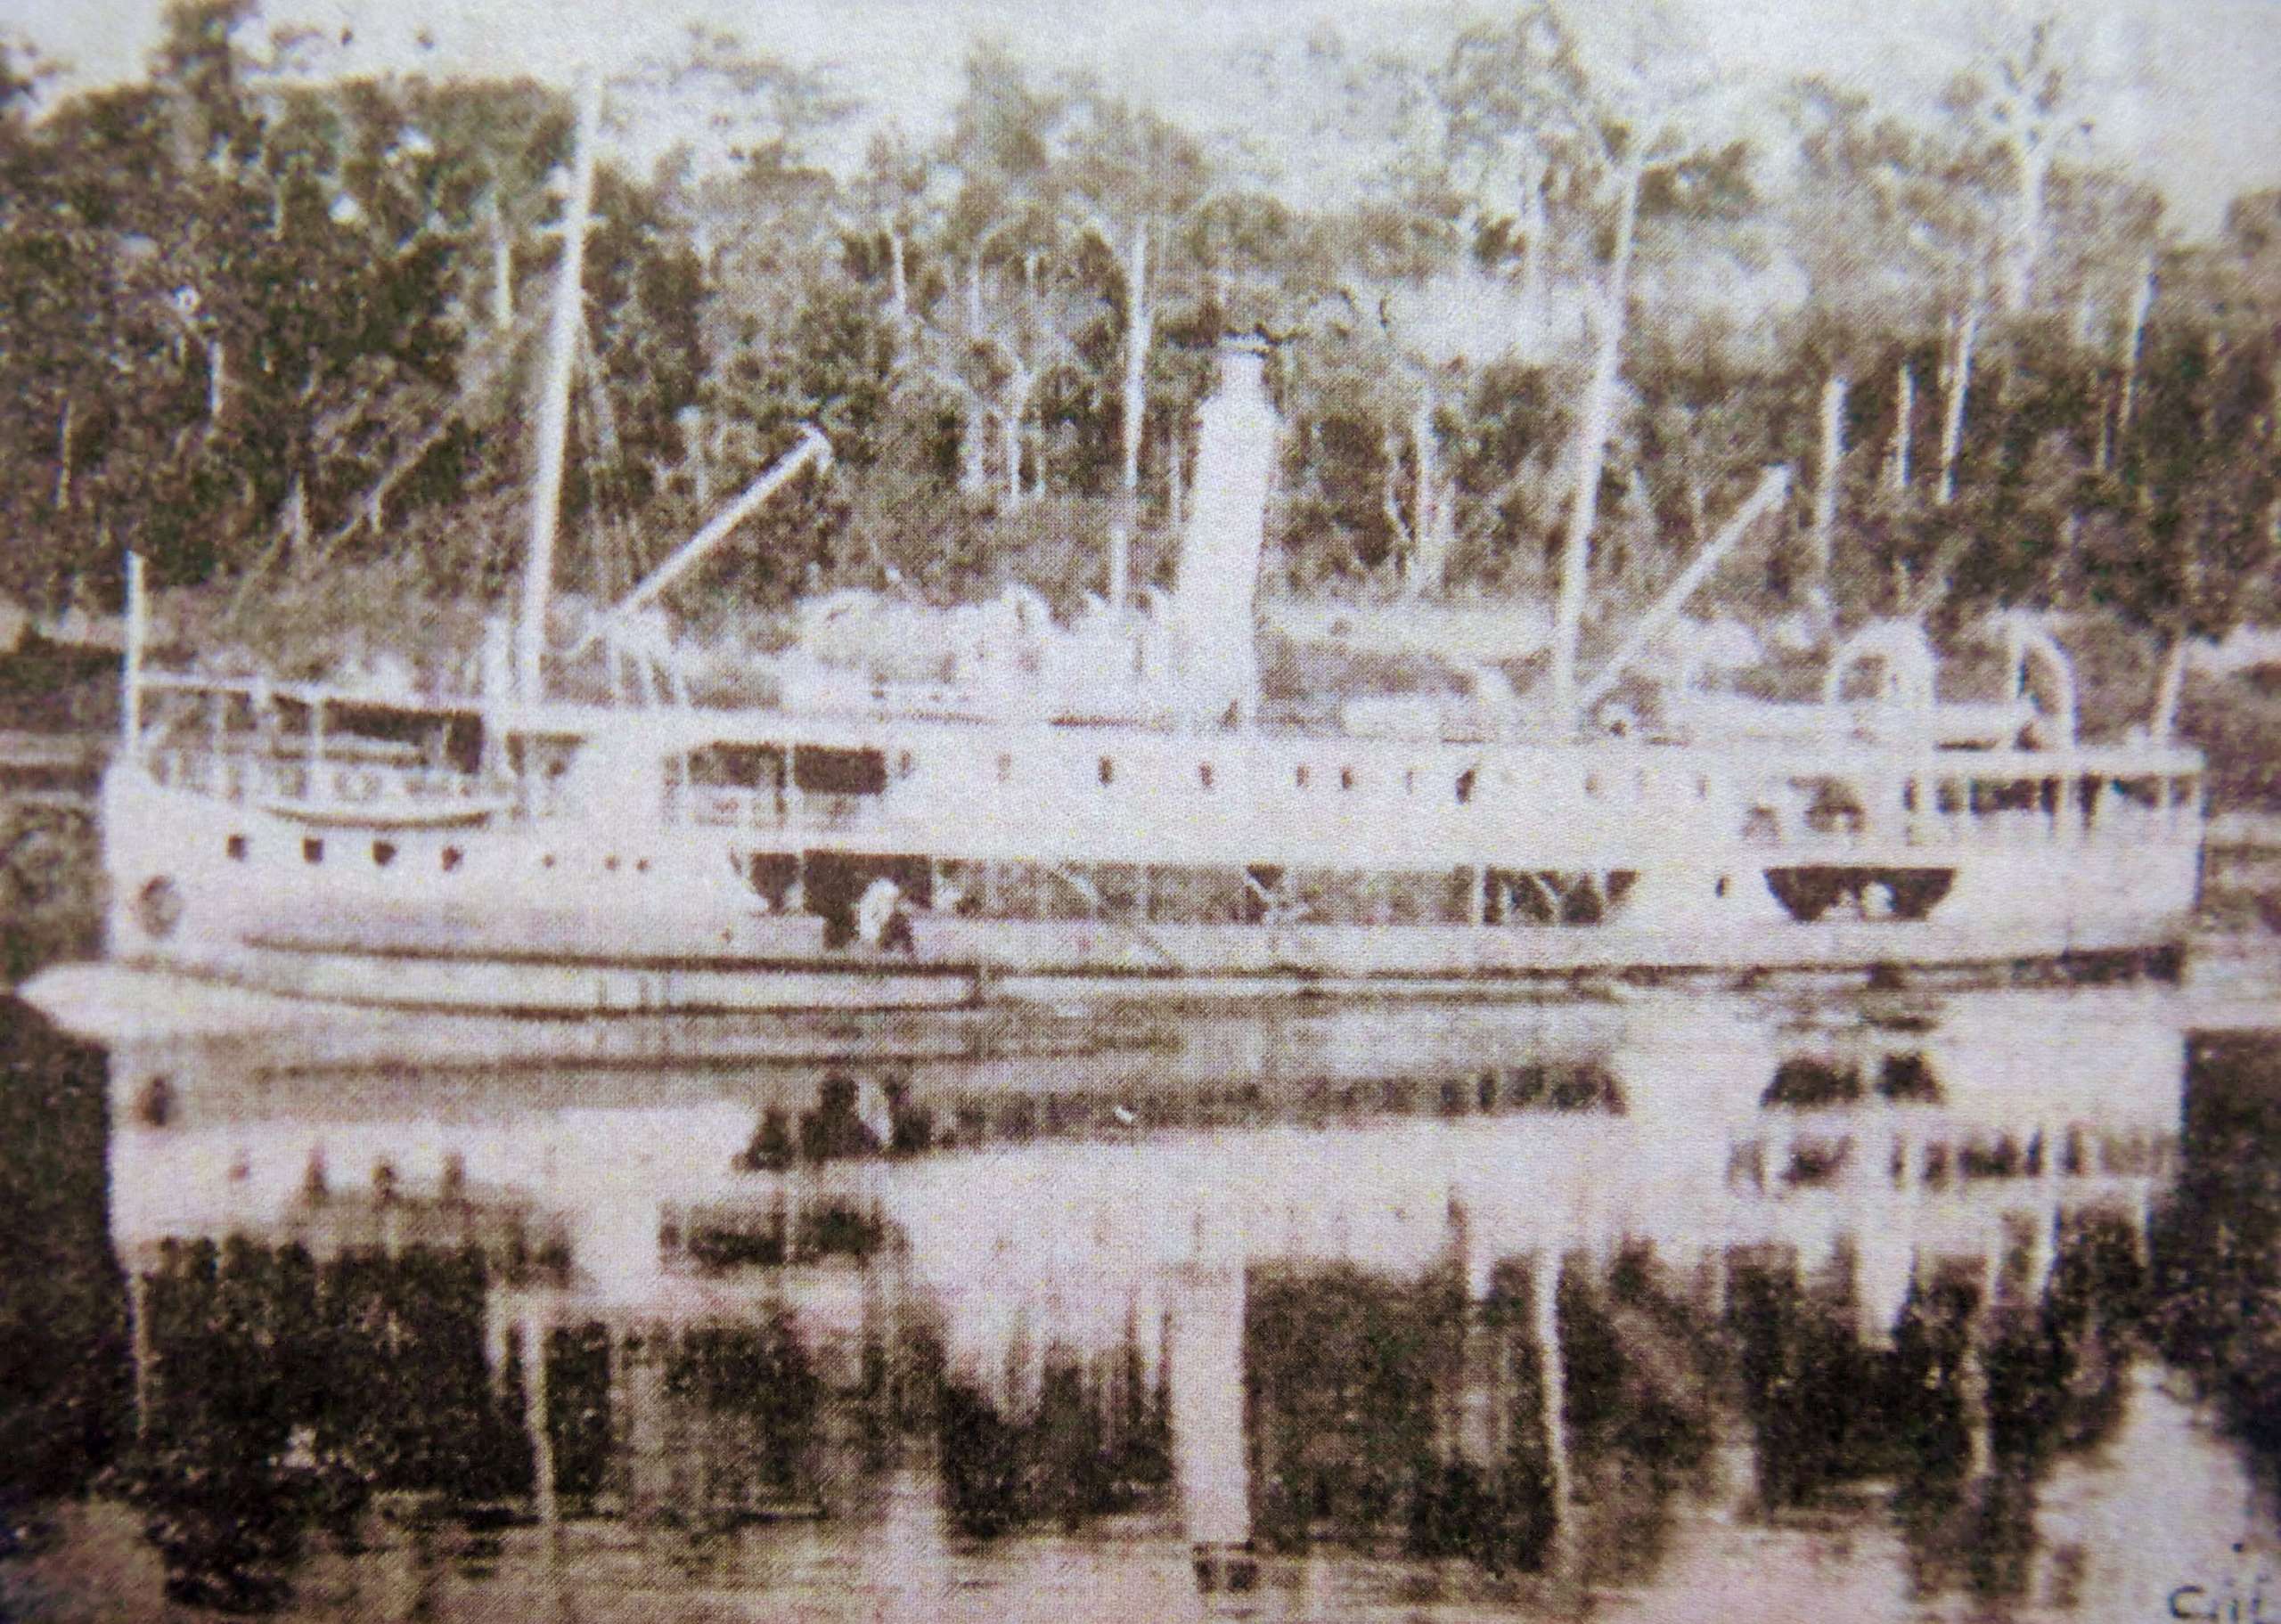 Conheça um dos maiores e mais trágicos naufrágios ocorridos na história de navegação na Amazônia a tragédia fluvial do Vapor Paes de Carvalho